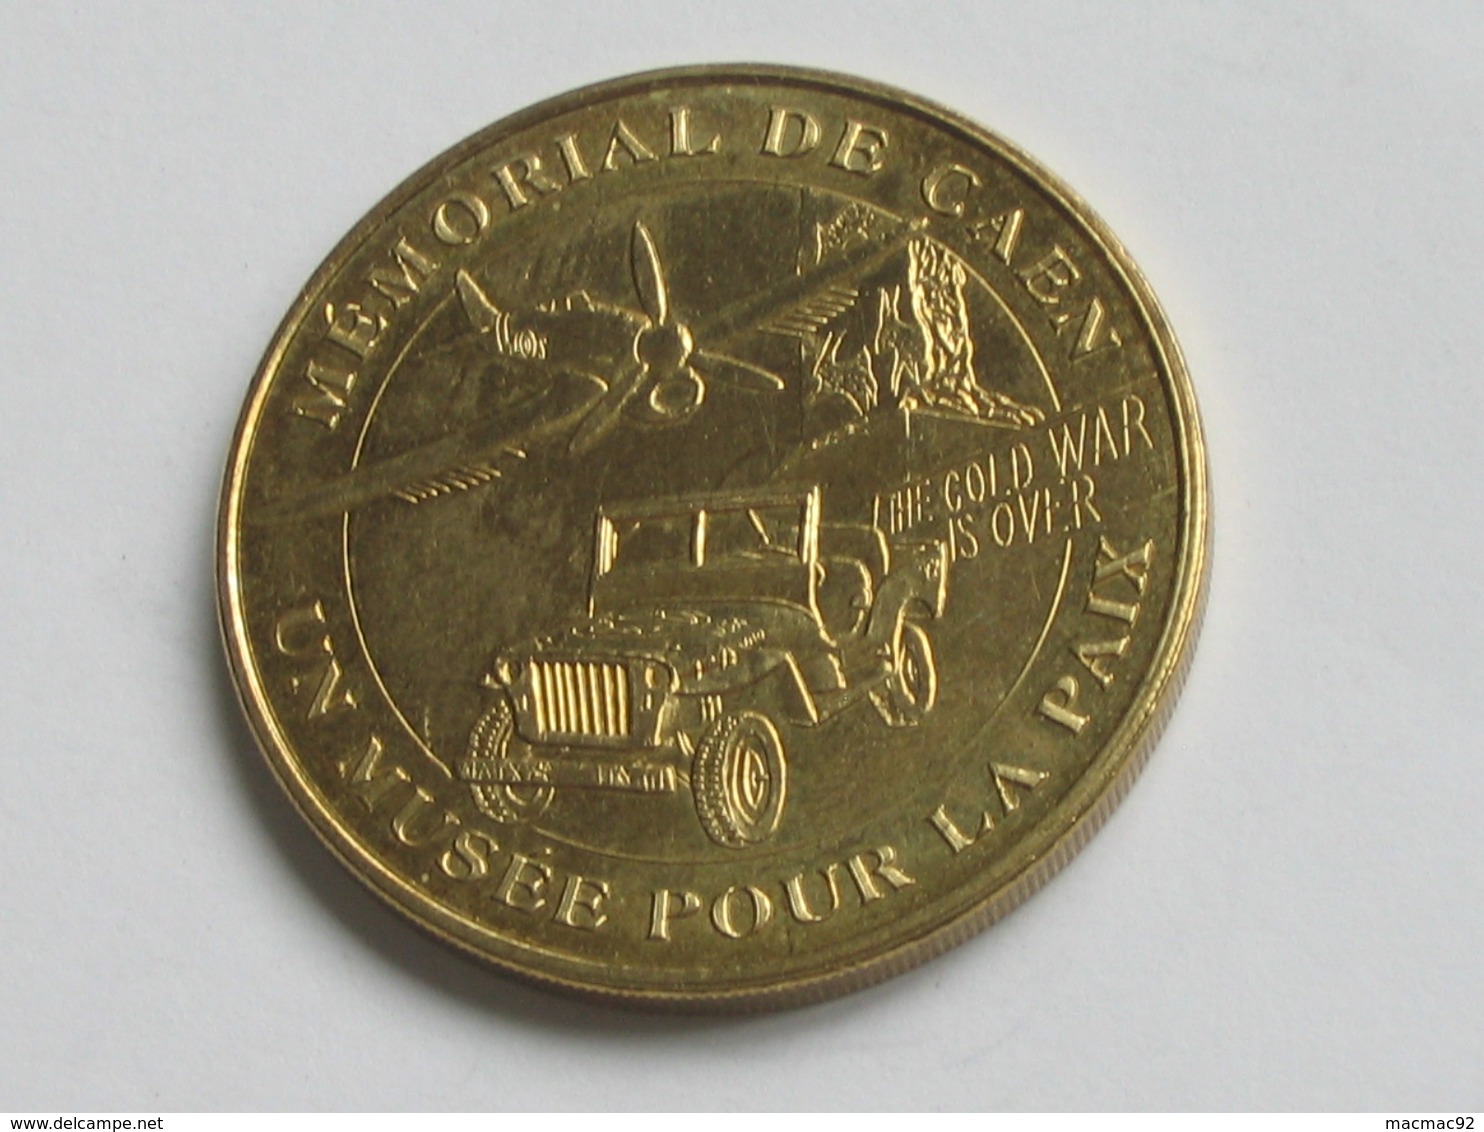 Médaille De La Monnaie De Paris - MEMORIAL DE CAEN - UN MUSEE POUR LA PAIX -  2007    **** EN ACHAT IMMEDIAT  **** - 2005